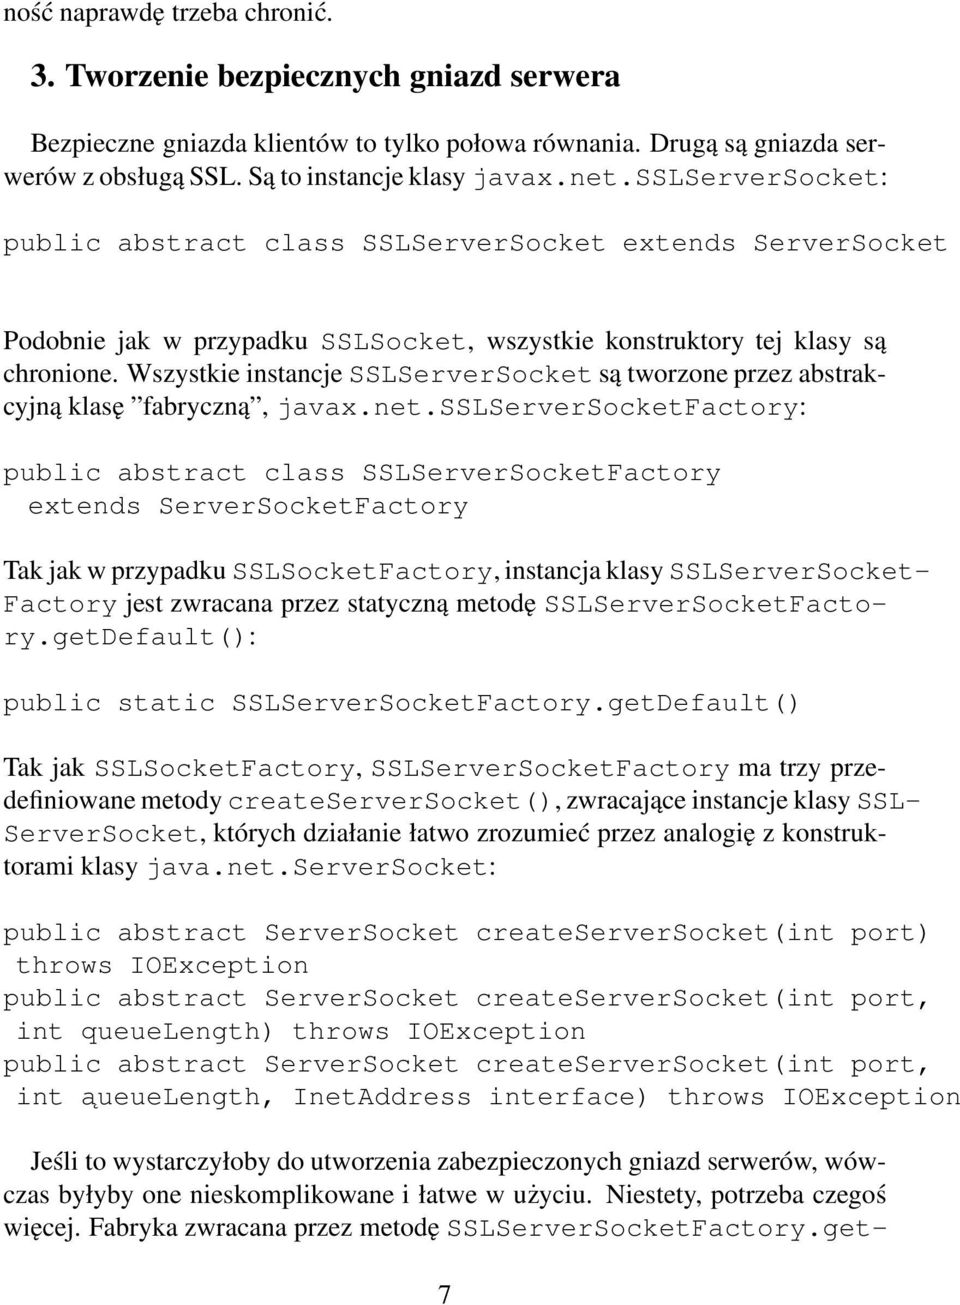 Wszystkie instancje SSLServerSocket są tworzone przez abstrakcyjną klasę fabryczną, javax.net.